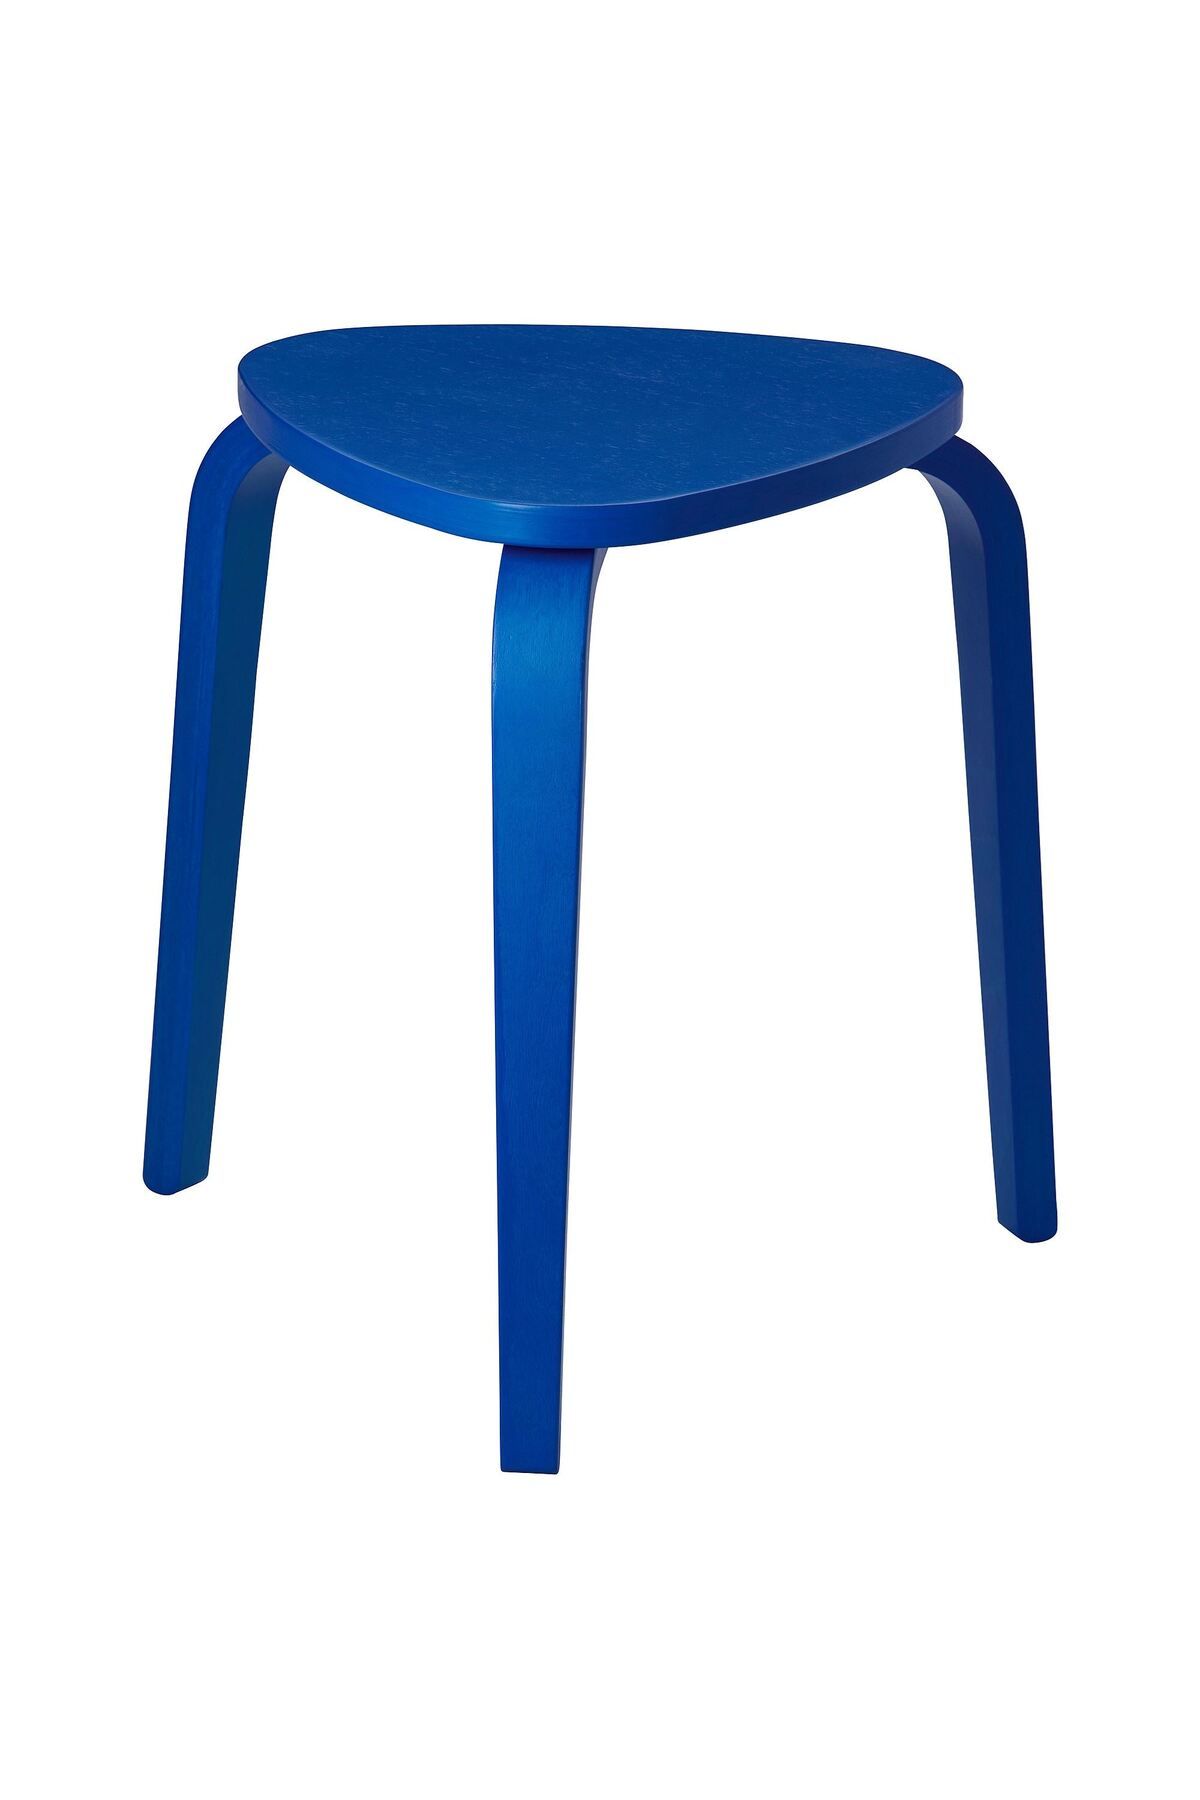 IKEA ahşap tabure, parlak mavi